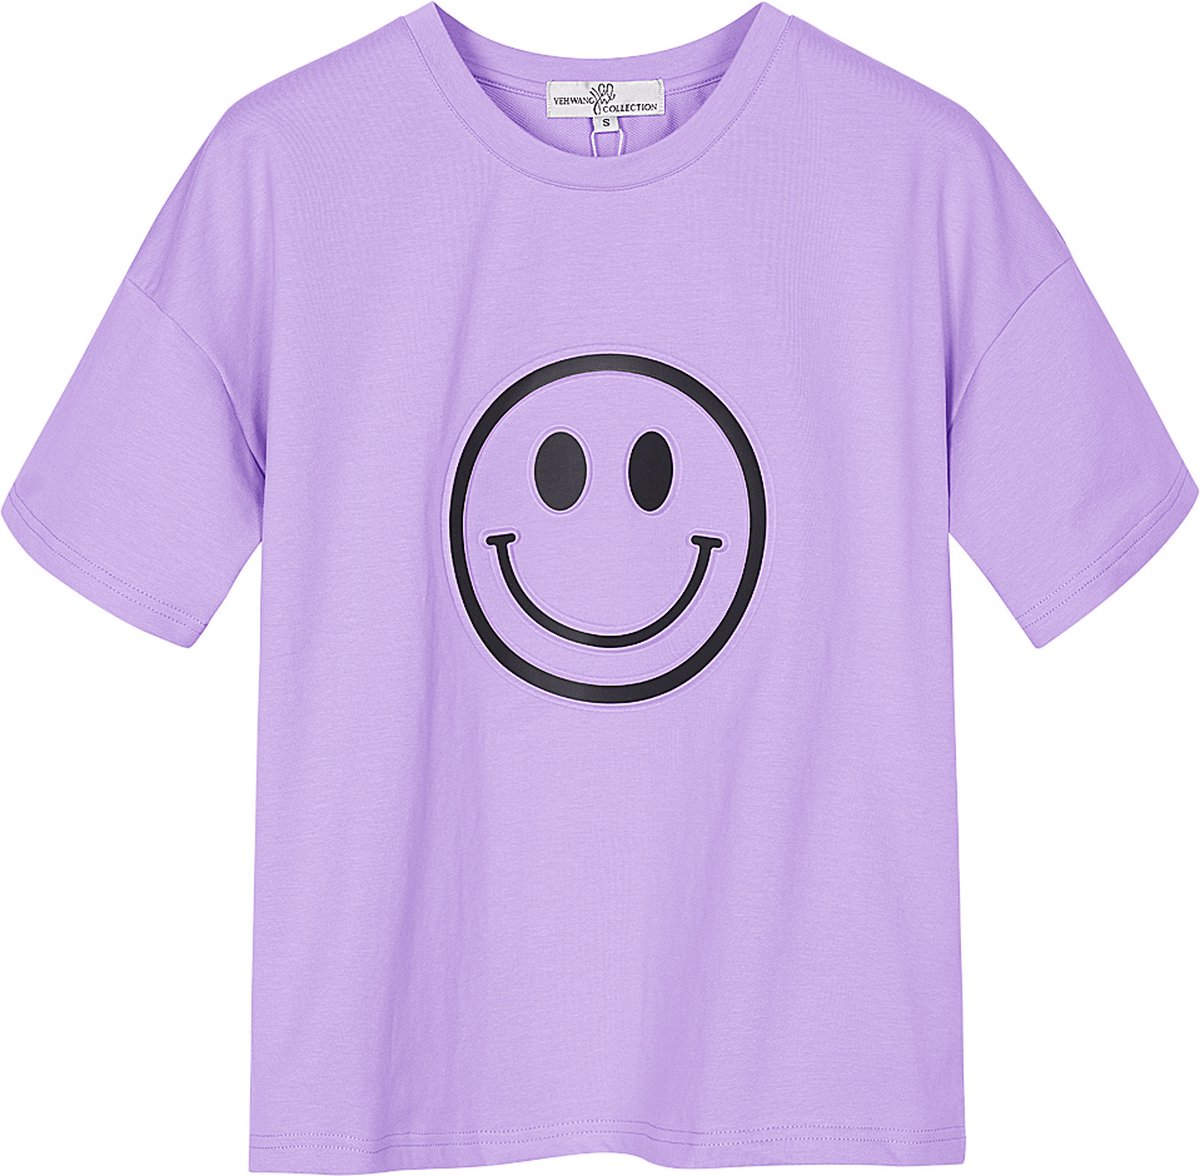 Yehwang - T-shirt met smiley - Lichtpaars - Maat: L